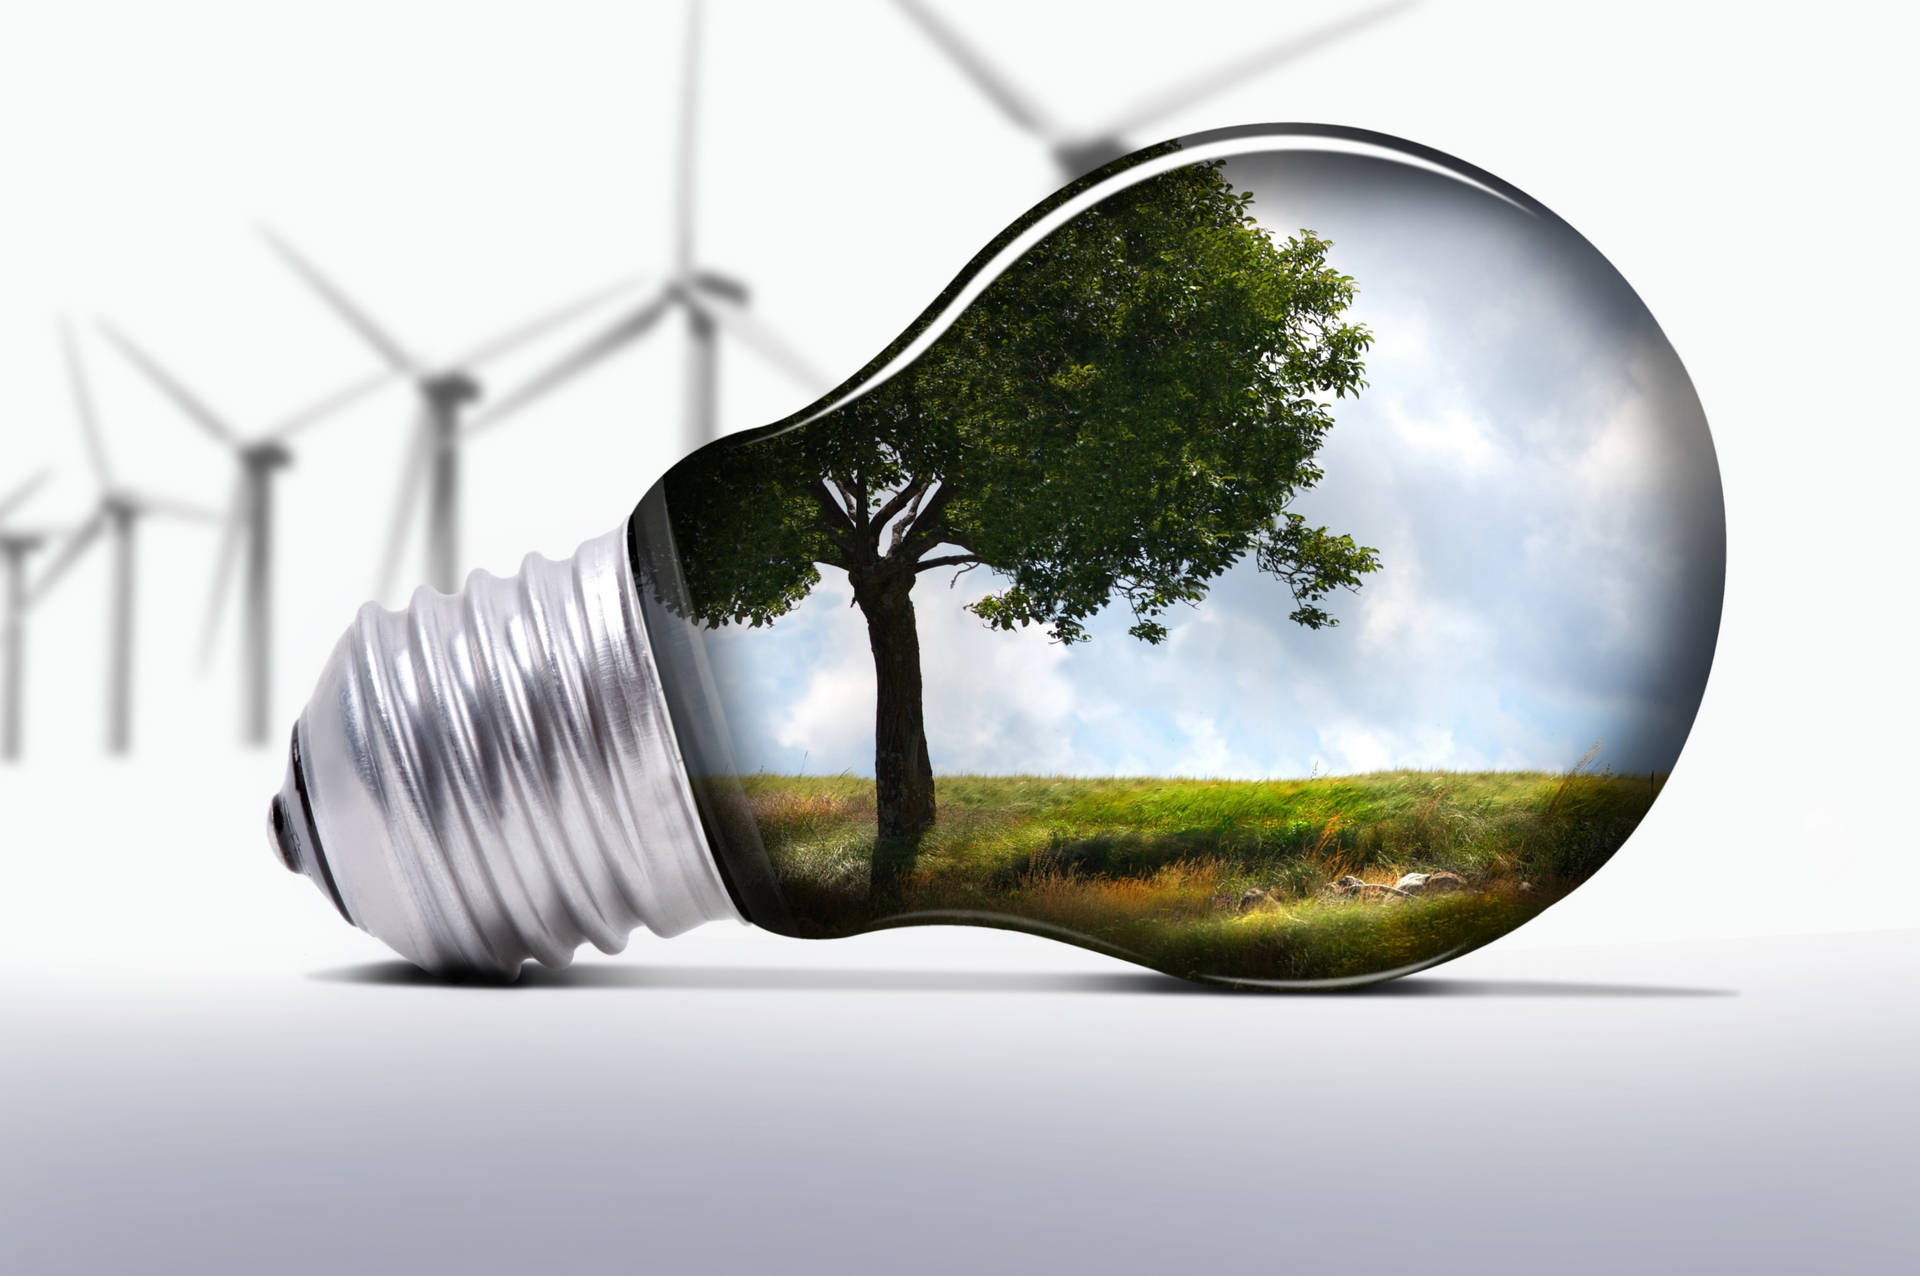 "Eco-Friendly Light Bulb Illuminated with Mini Windmills" Wallpaper